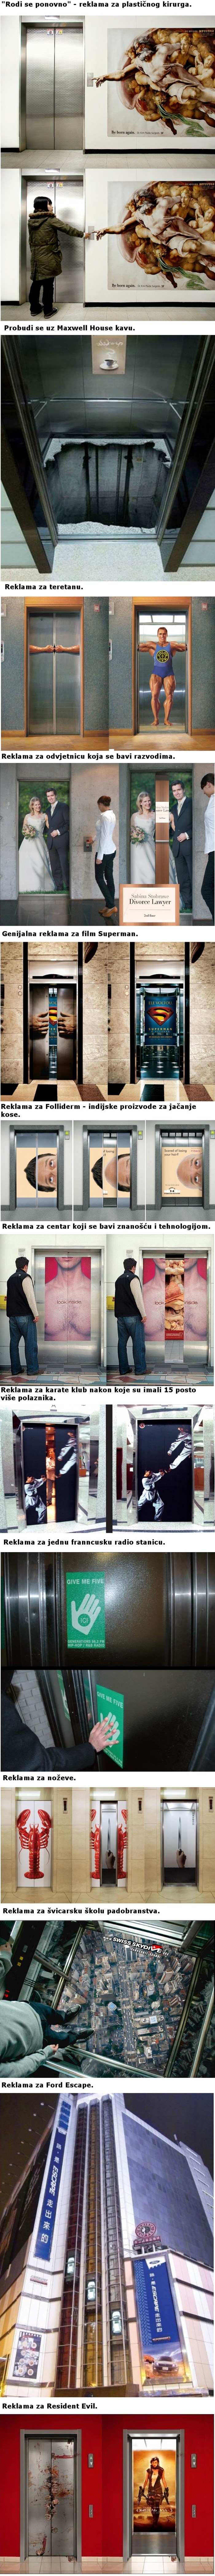 Trinaest najkreativnijih i najboljih reklama u liftovima 